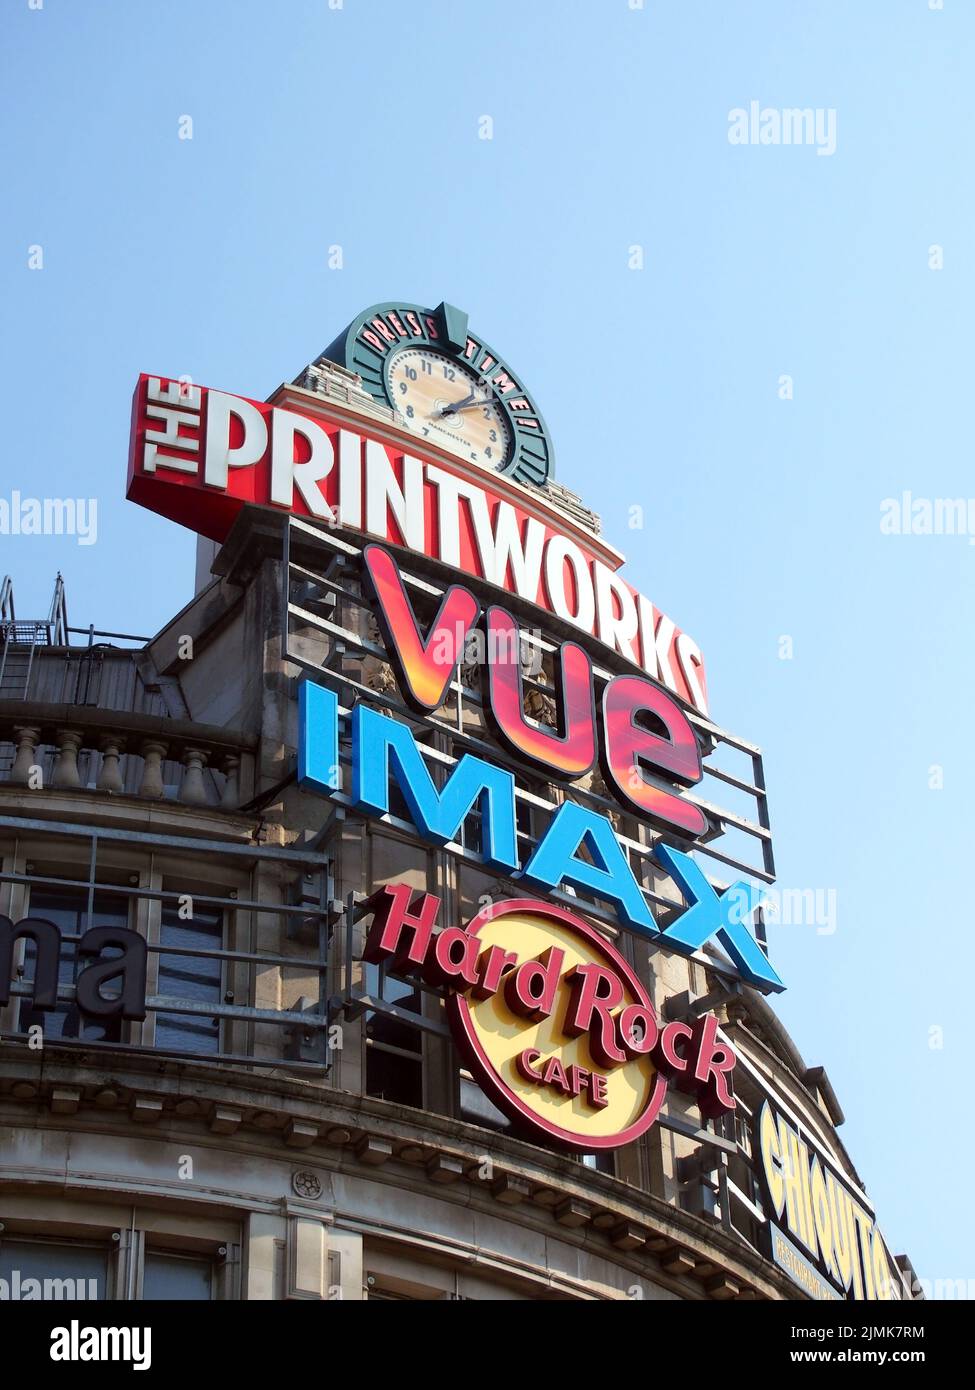 Des panneaux indiquent des horloges sur le bâtiment printworks et le complexe de divertissement dans le centre-ville de manchester Banque D'Images